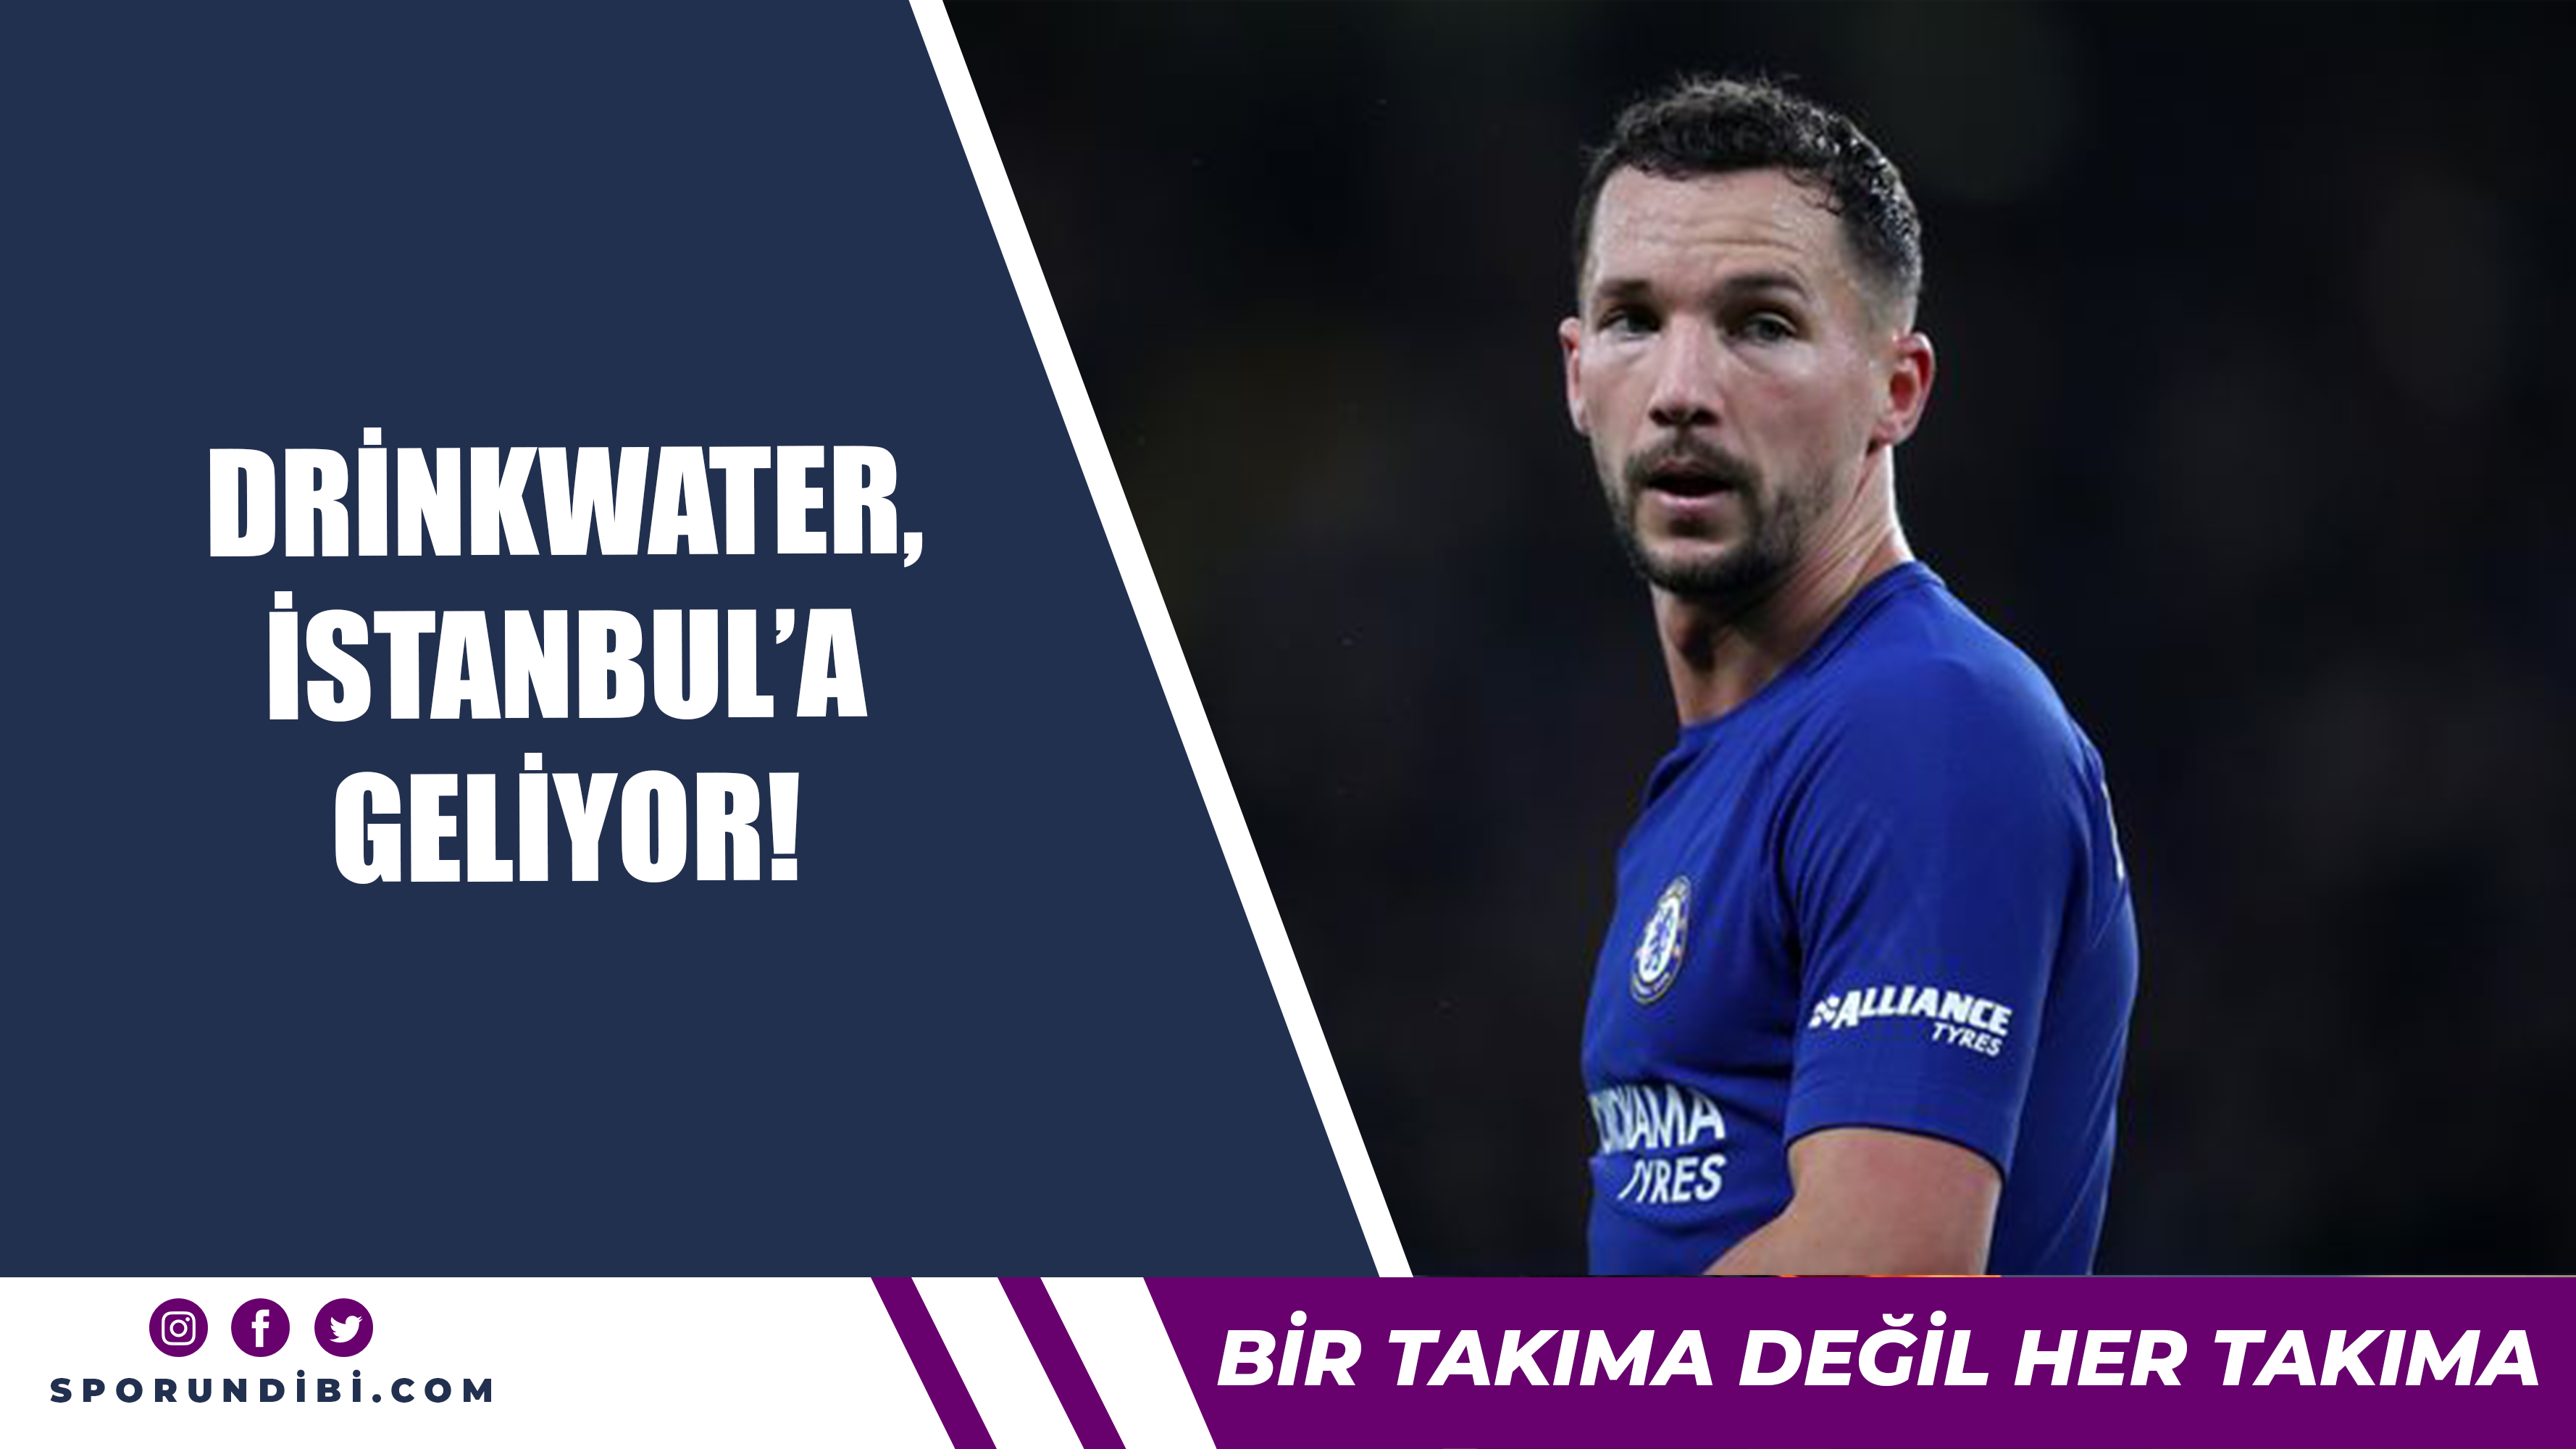 Drinkwater, İstanbul’a geliyor!